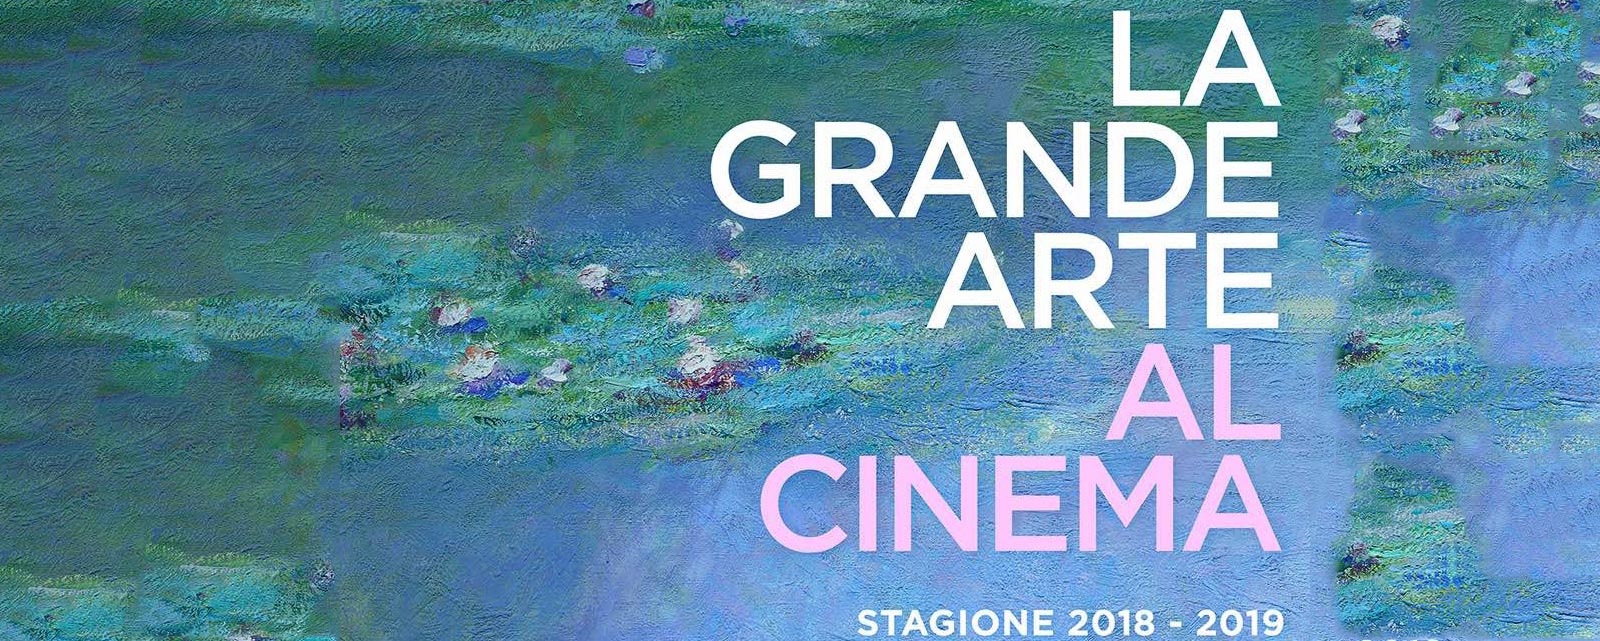 La Grande Arte al Cinema stagione 2018-2019